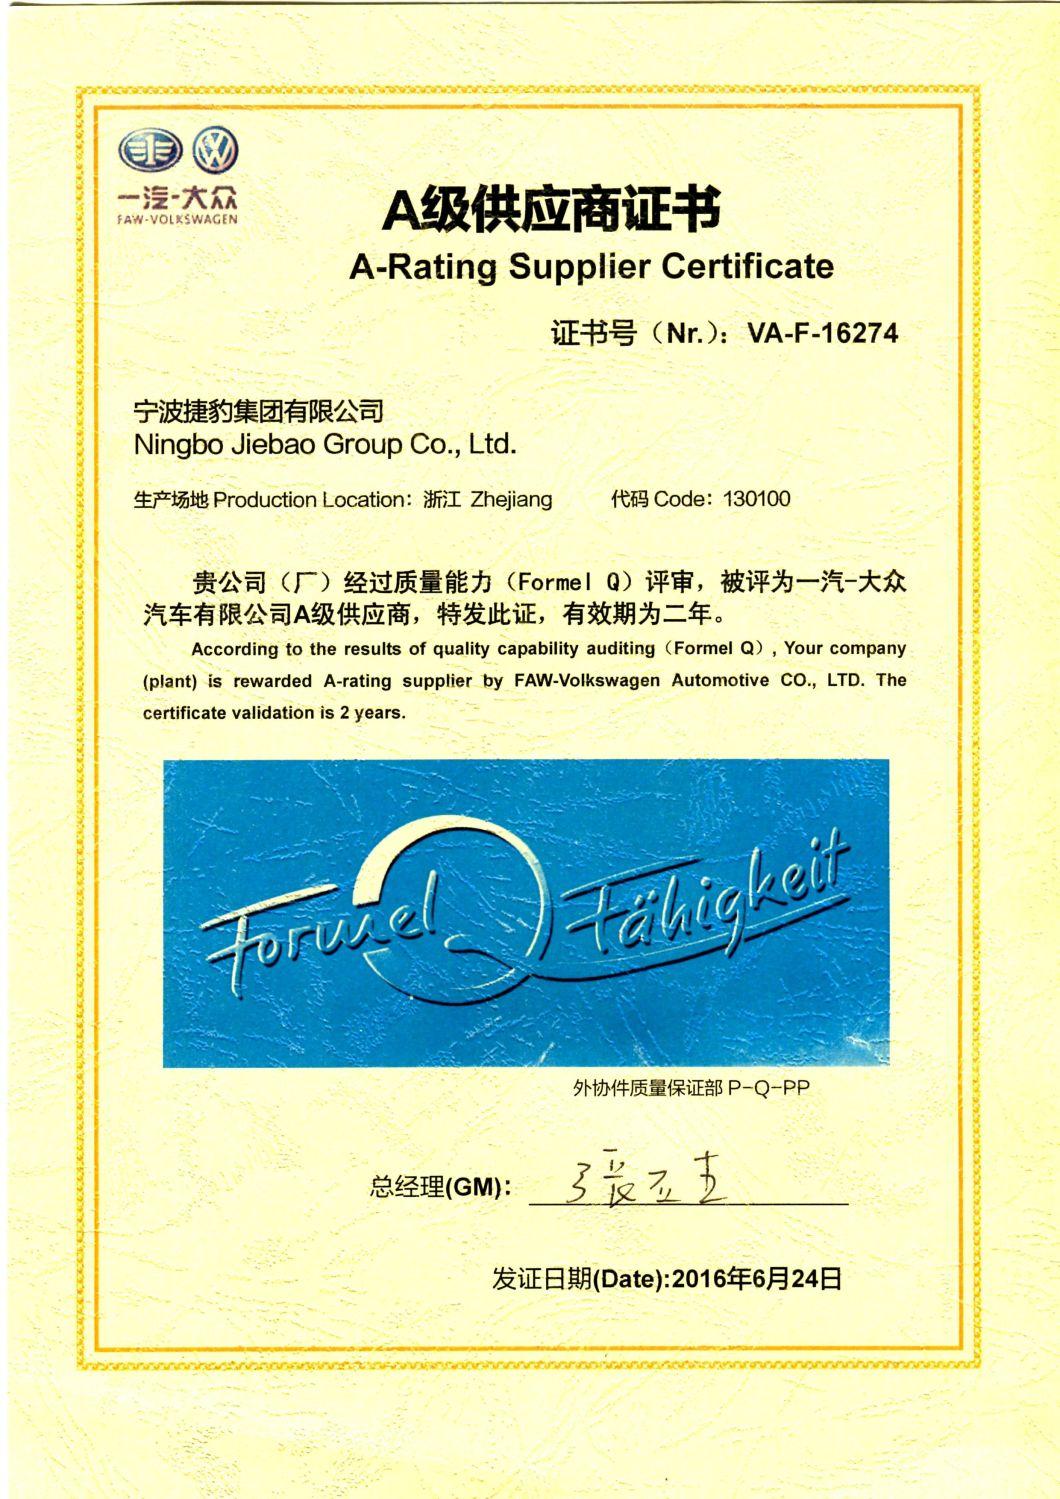 General Motors Belt Maker - Jiebao OEM Neoprene Transmission Parts Fan Automotive Textile Garment Packaging Agricultural Machinery T10 Toothed Belt